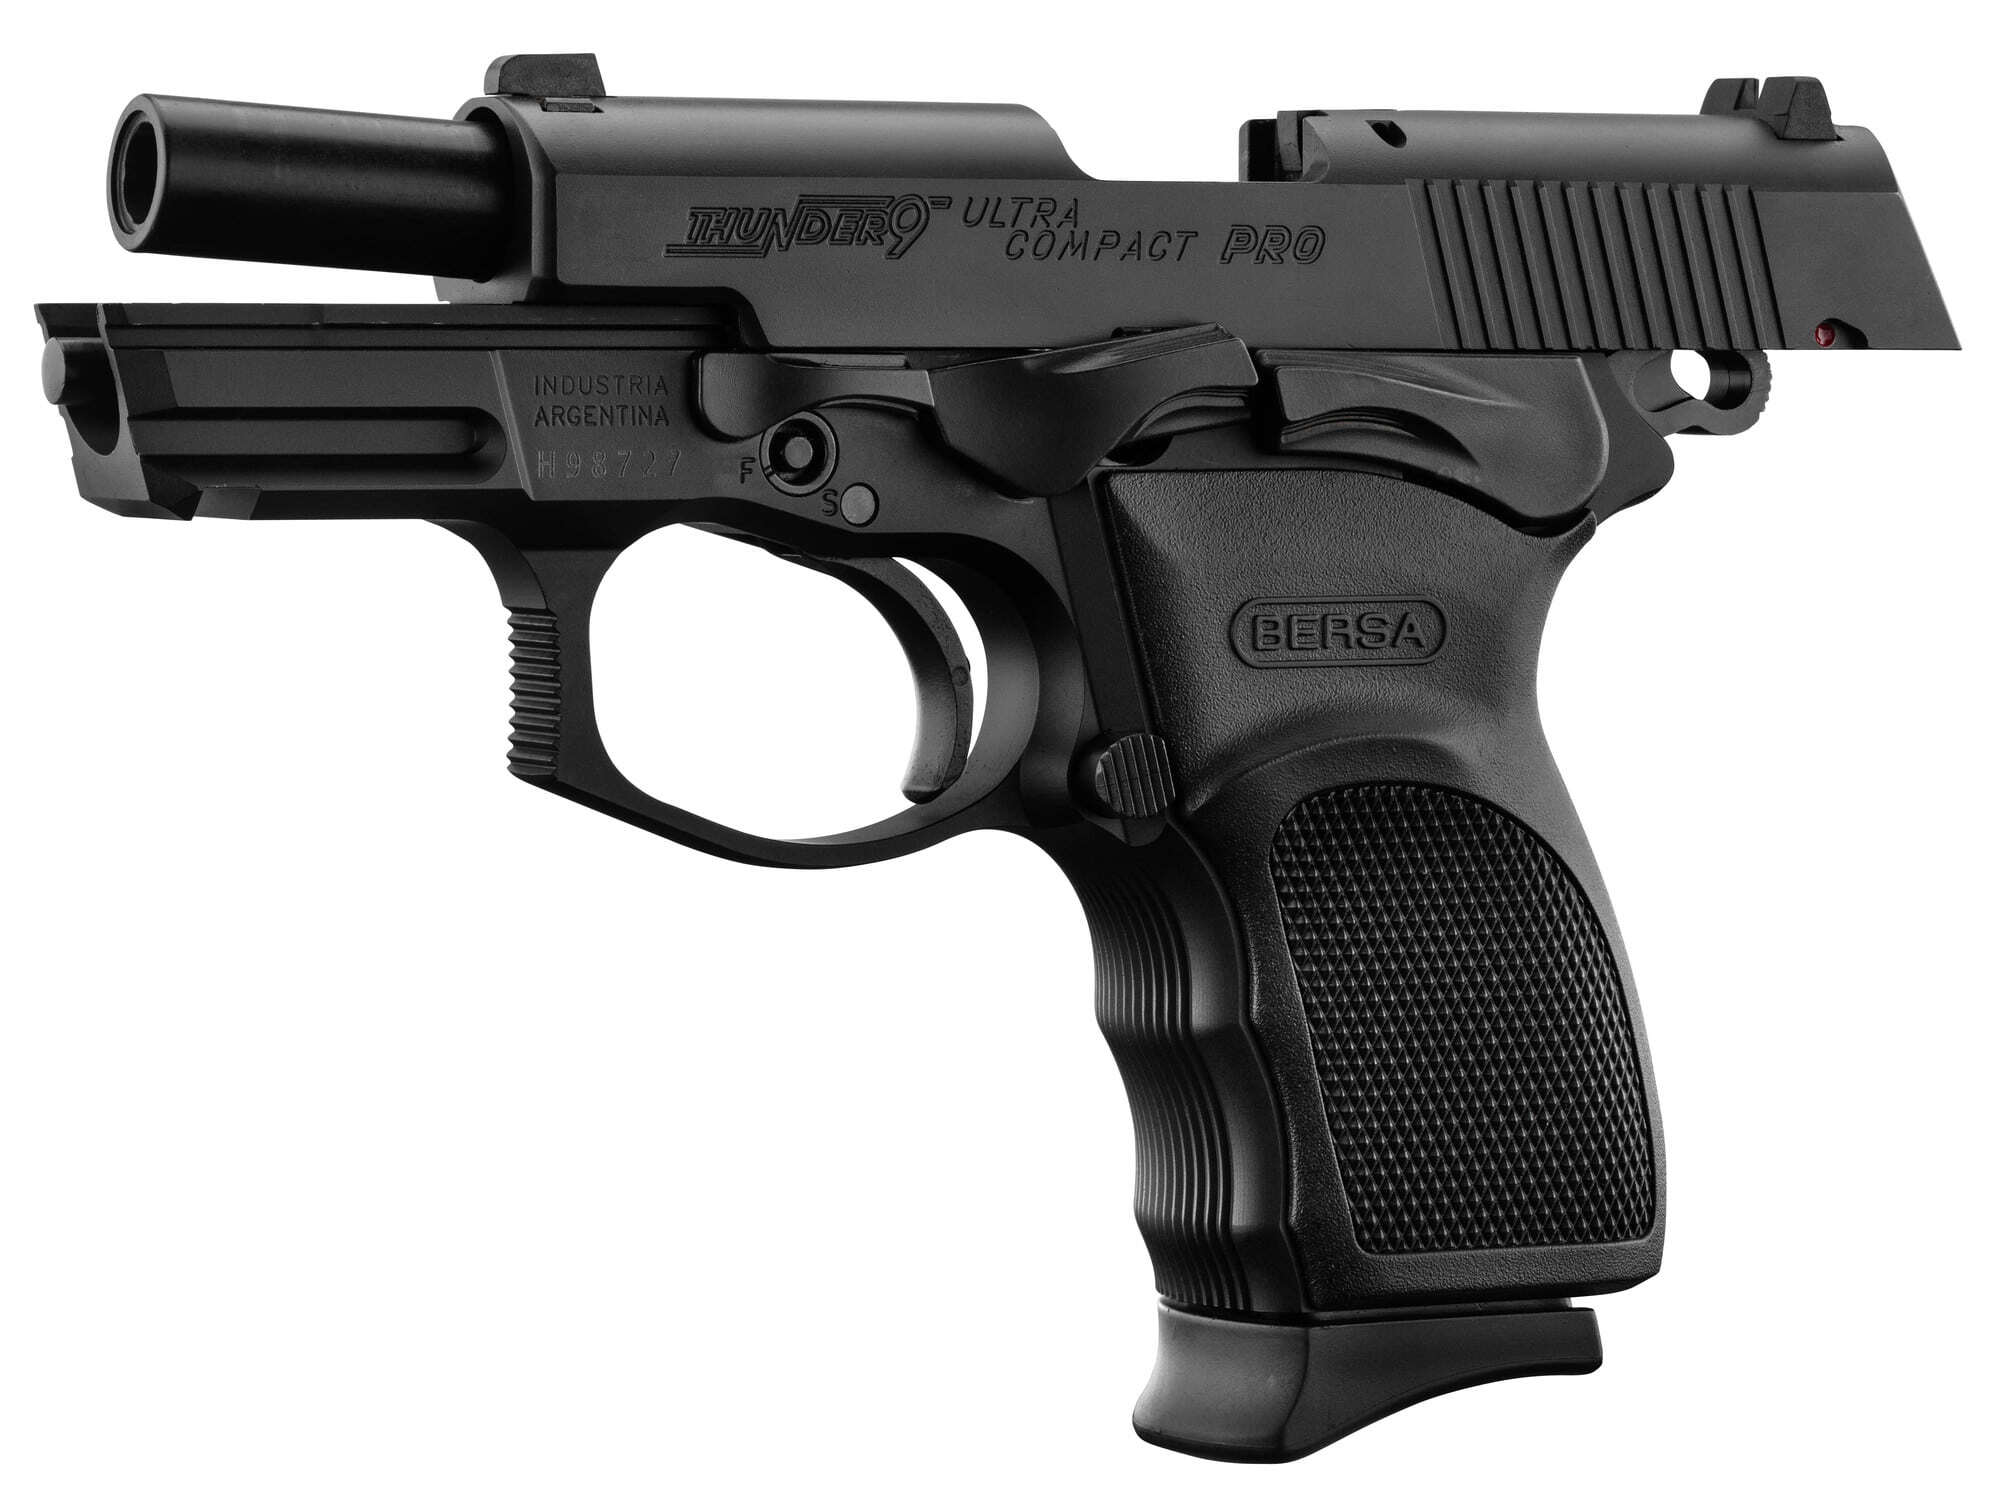 pistolet-bersa-thunder-9-mm-ultra-compact-pro-noir-bersa